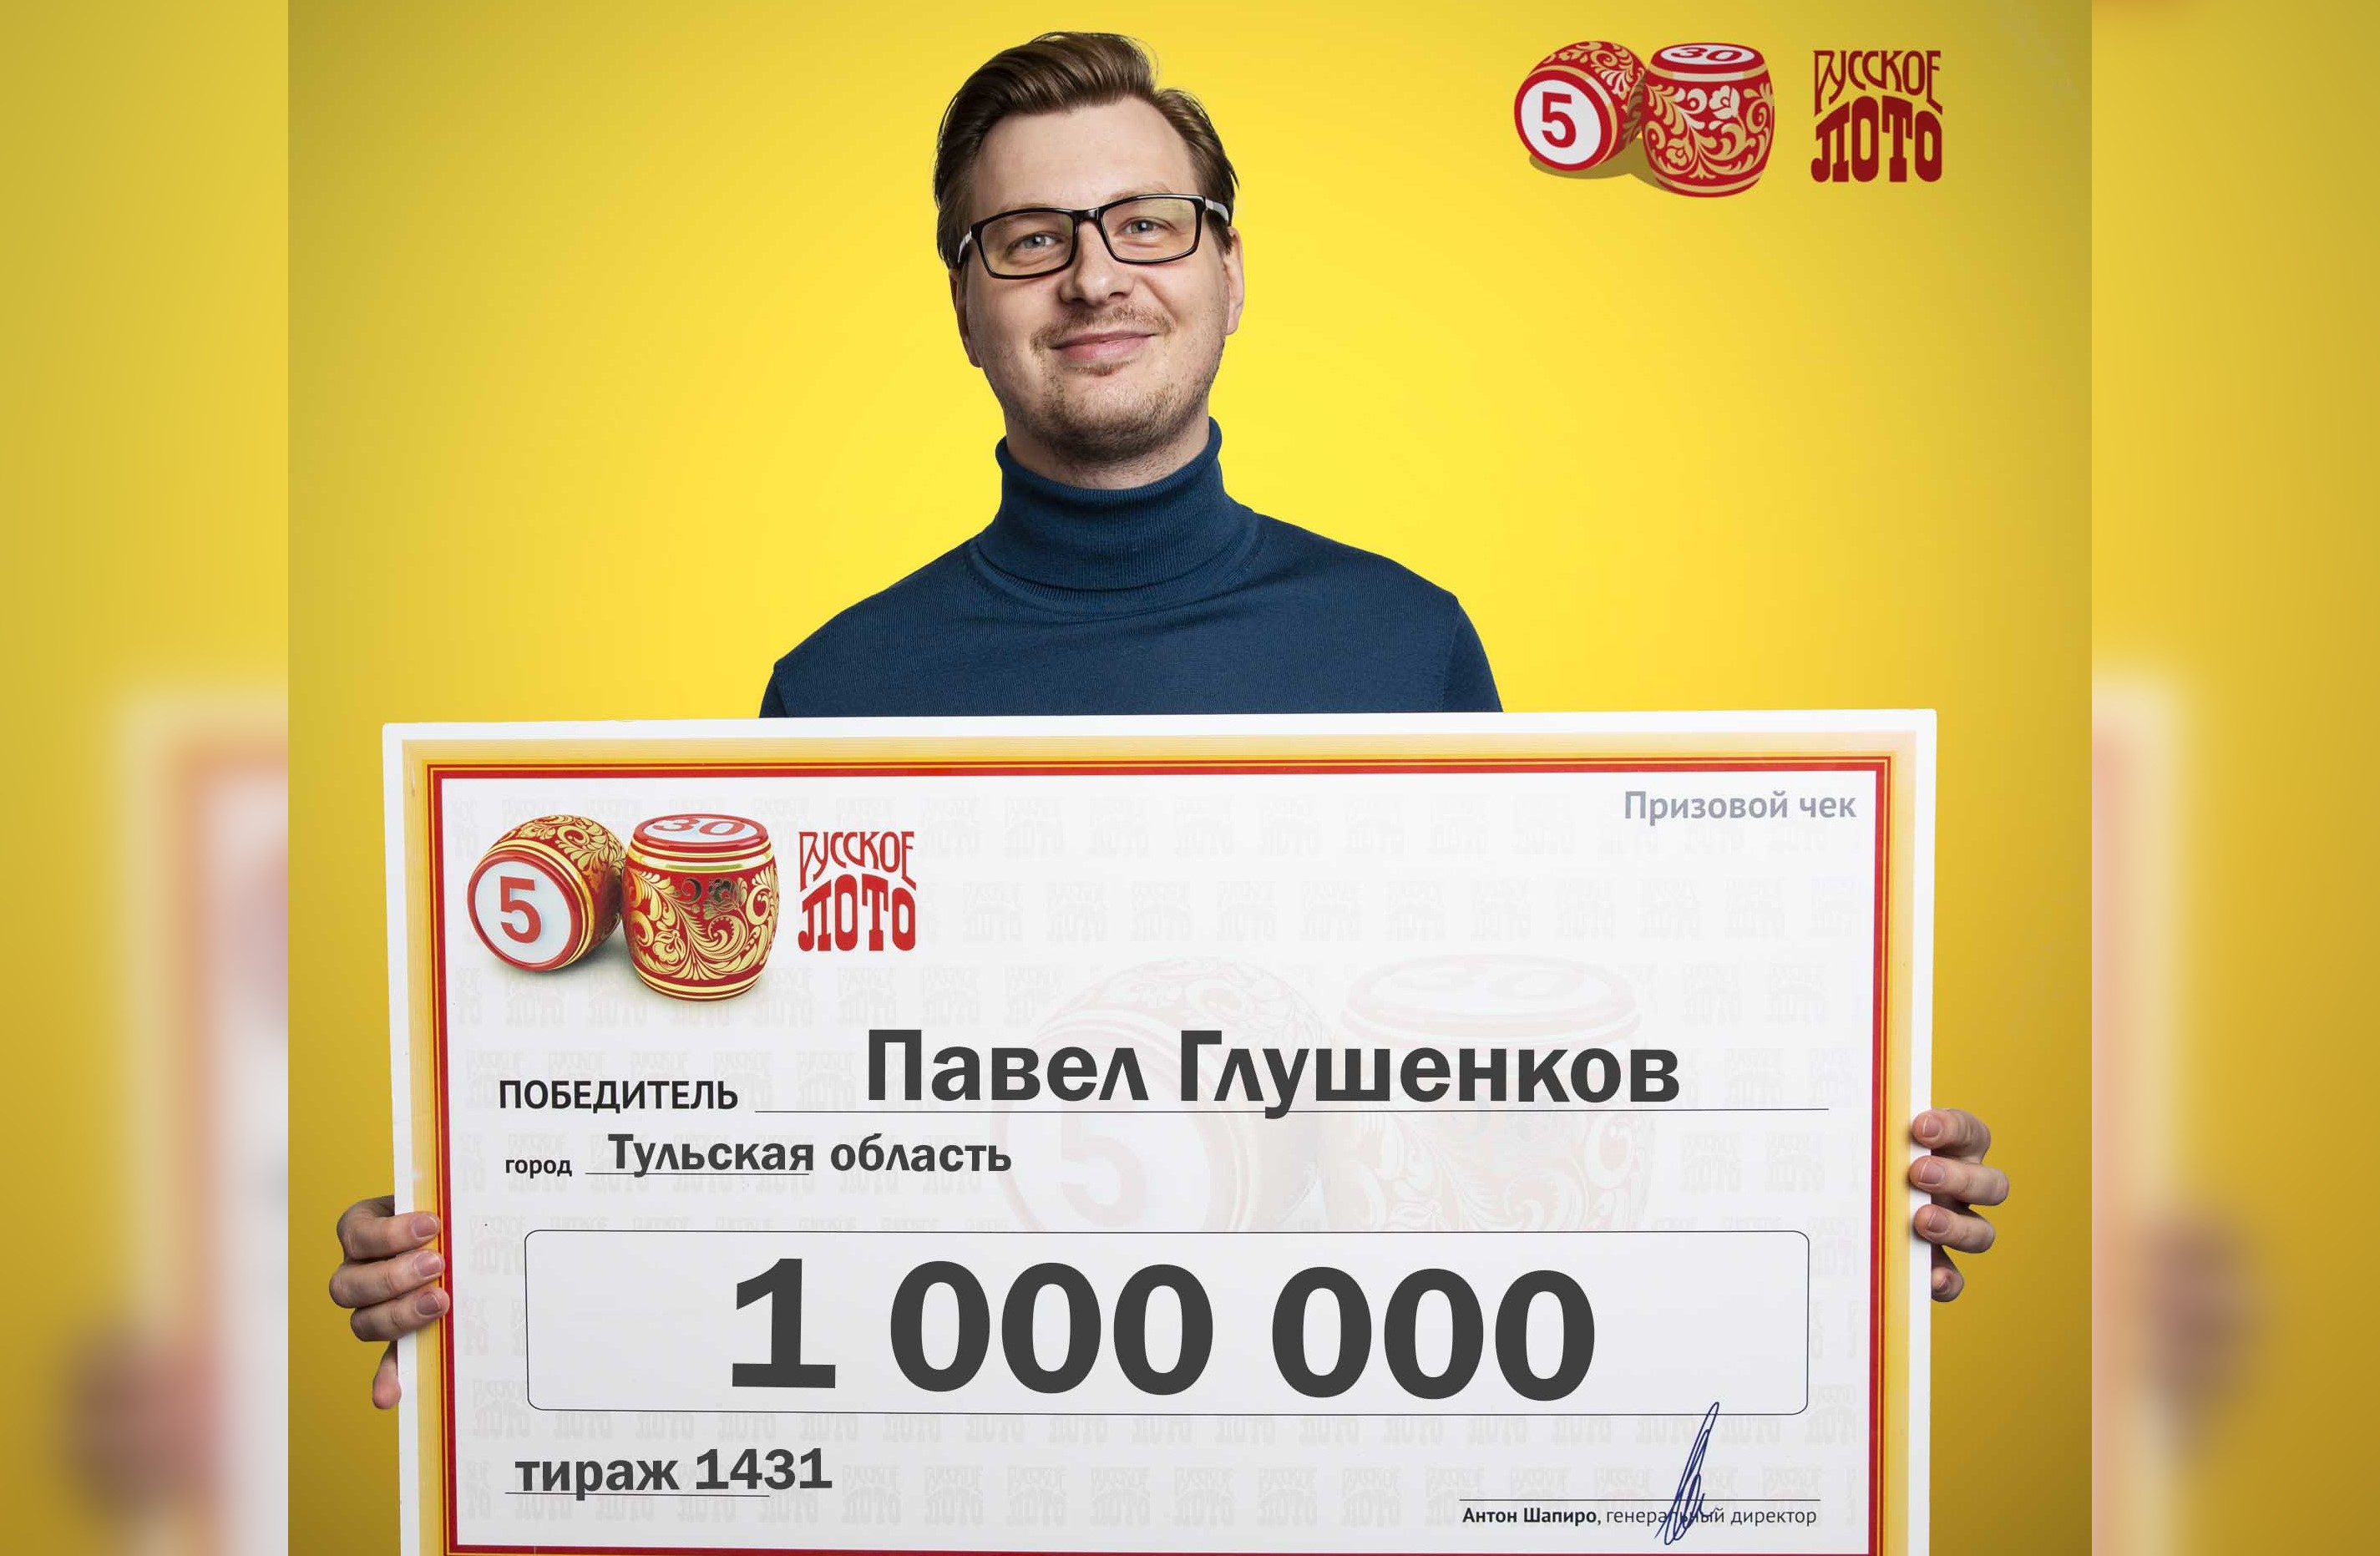 Тулячка выиграла в лотерею 1 миллион рублей